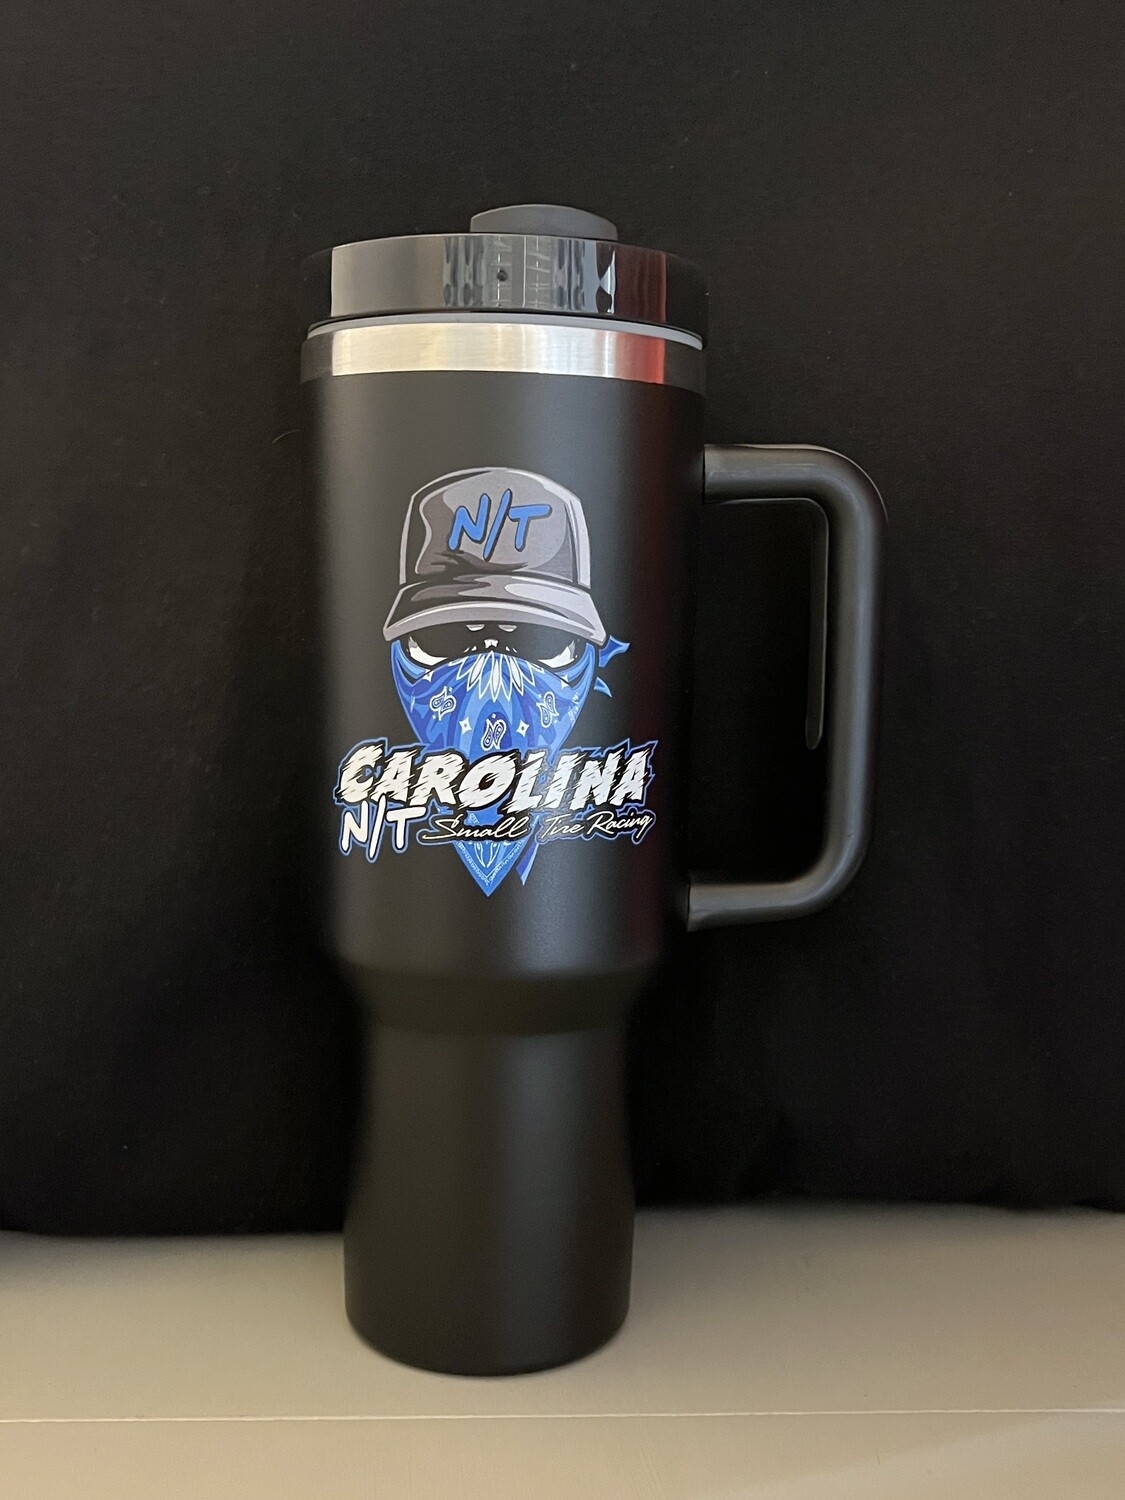 Ball cap bandit black/Carolina blue tumbler Cup